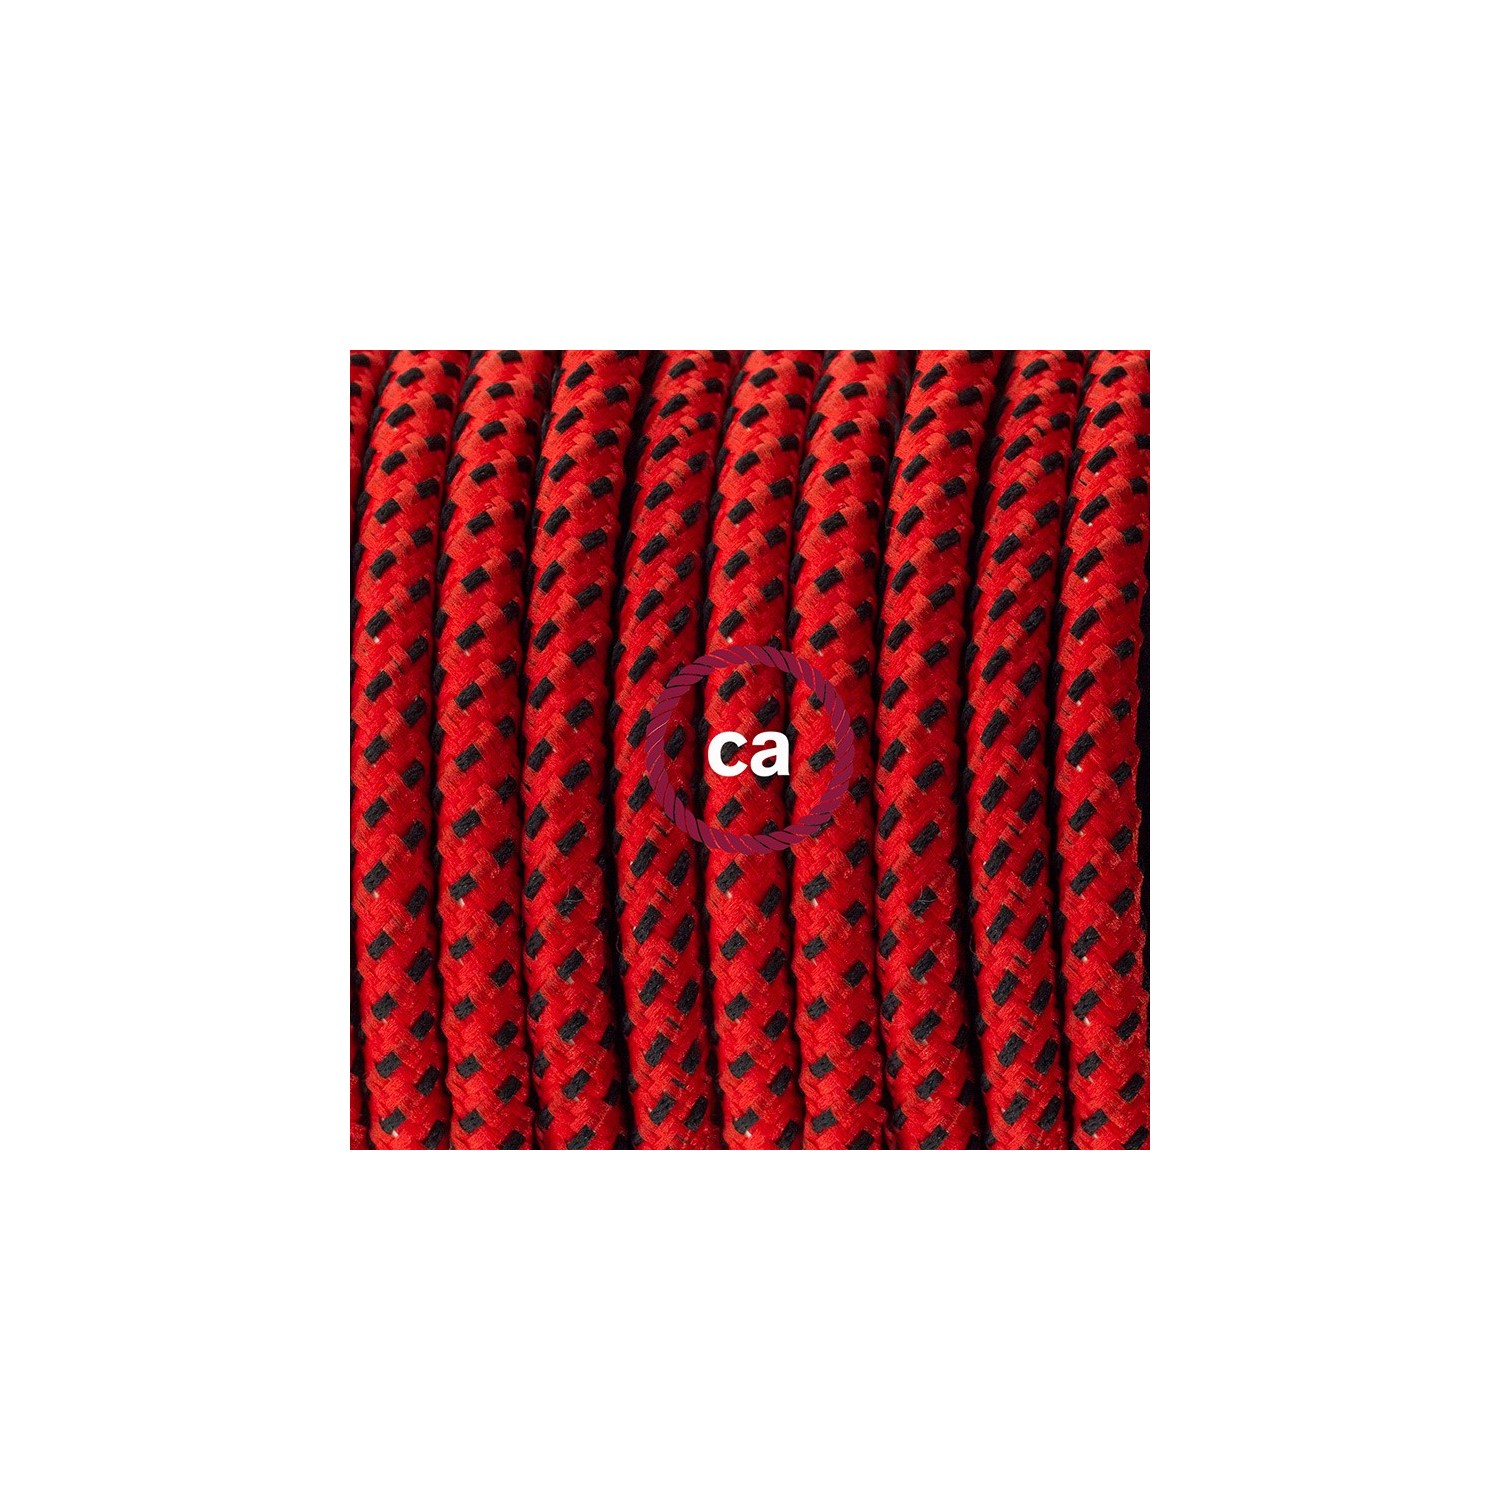 Ronde flexibele textielkabel van viscose met schakelaar en stekker. RT94 - duivels rood 1,80 m.